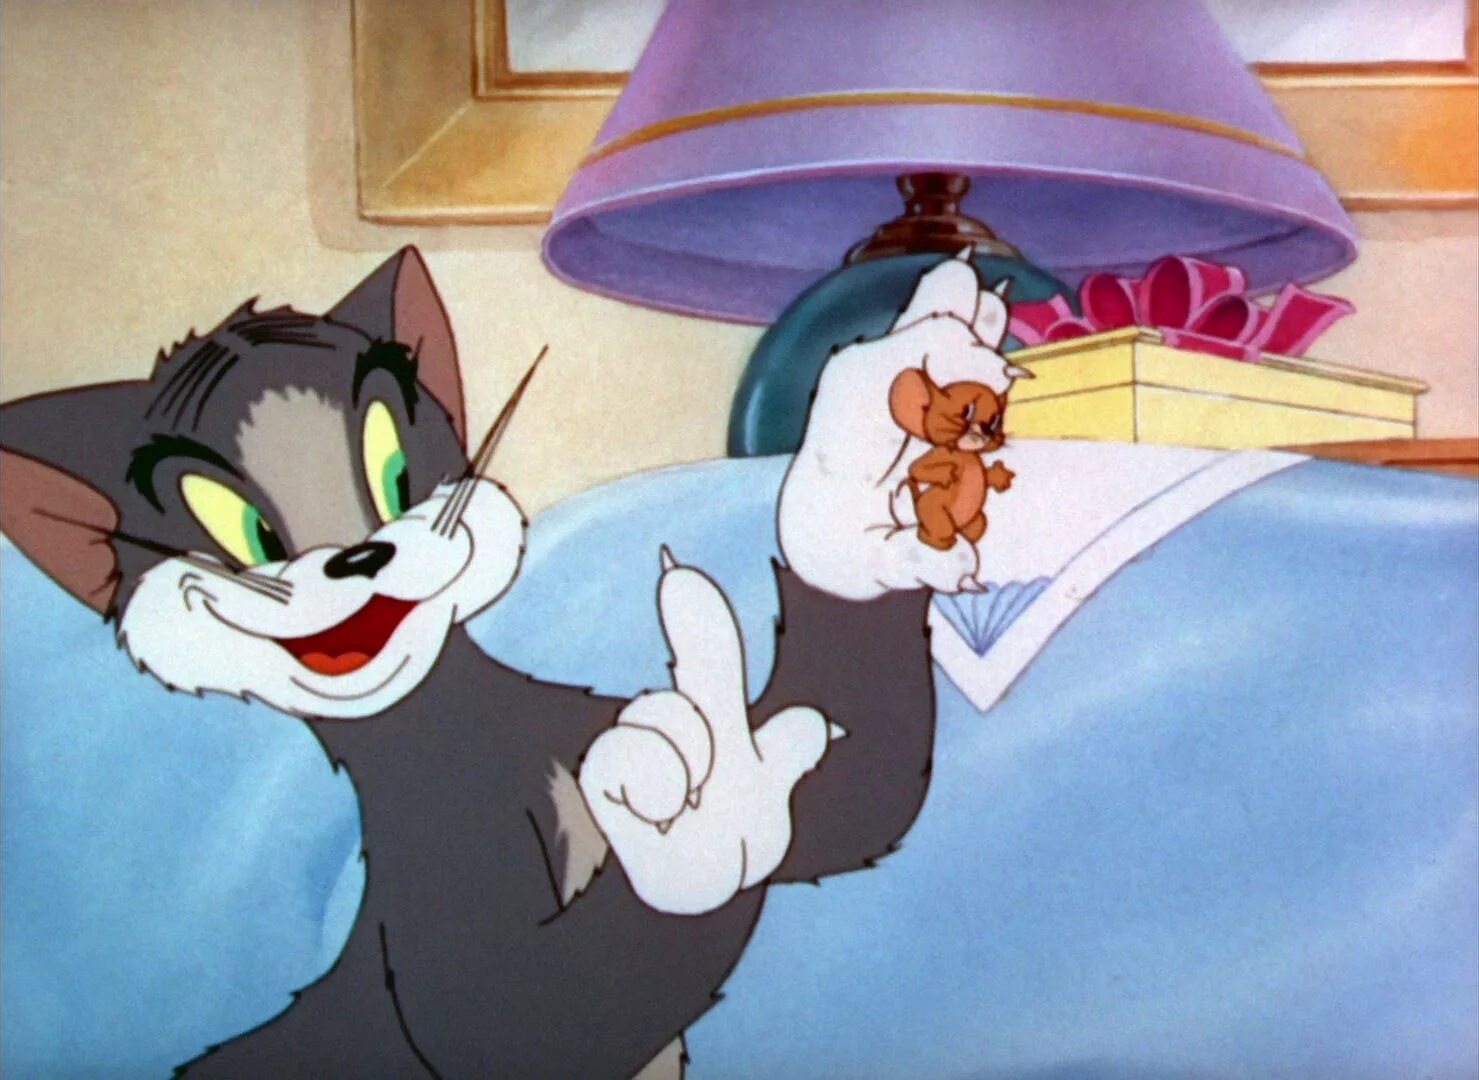 Том из тома и джерри. Tom and Jerry 1940. Том и Джерри 1976. Том и Джерри 1996. Tom Jerry 1940е.